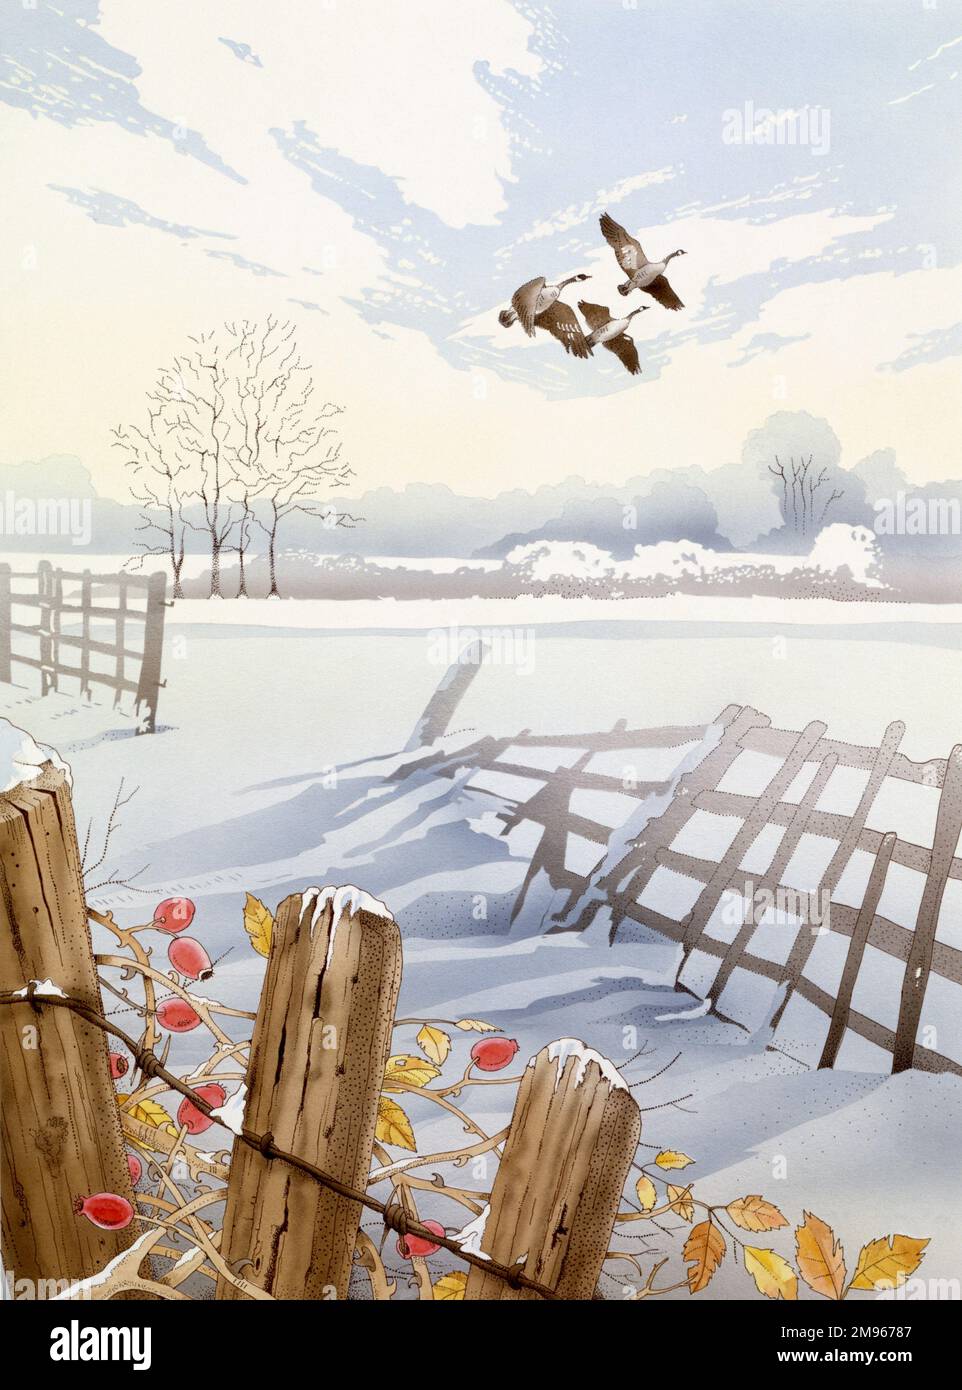 Un troupeau de Bernaches du Canada (Branta canadensis) survolant une campagne enneigée de vieilles clôtures, de ciel blanc brumeux et d'un enchevêtrement d'épines et de hanches. Peinture aquarelle par Malcolm Greensmith Banque D'Images